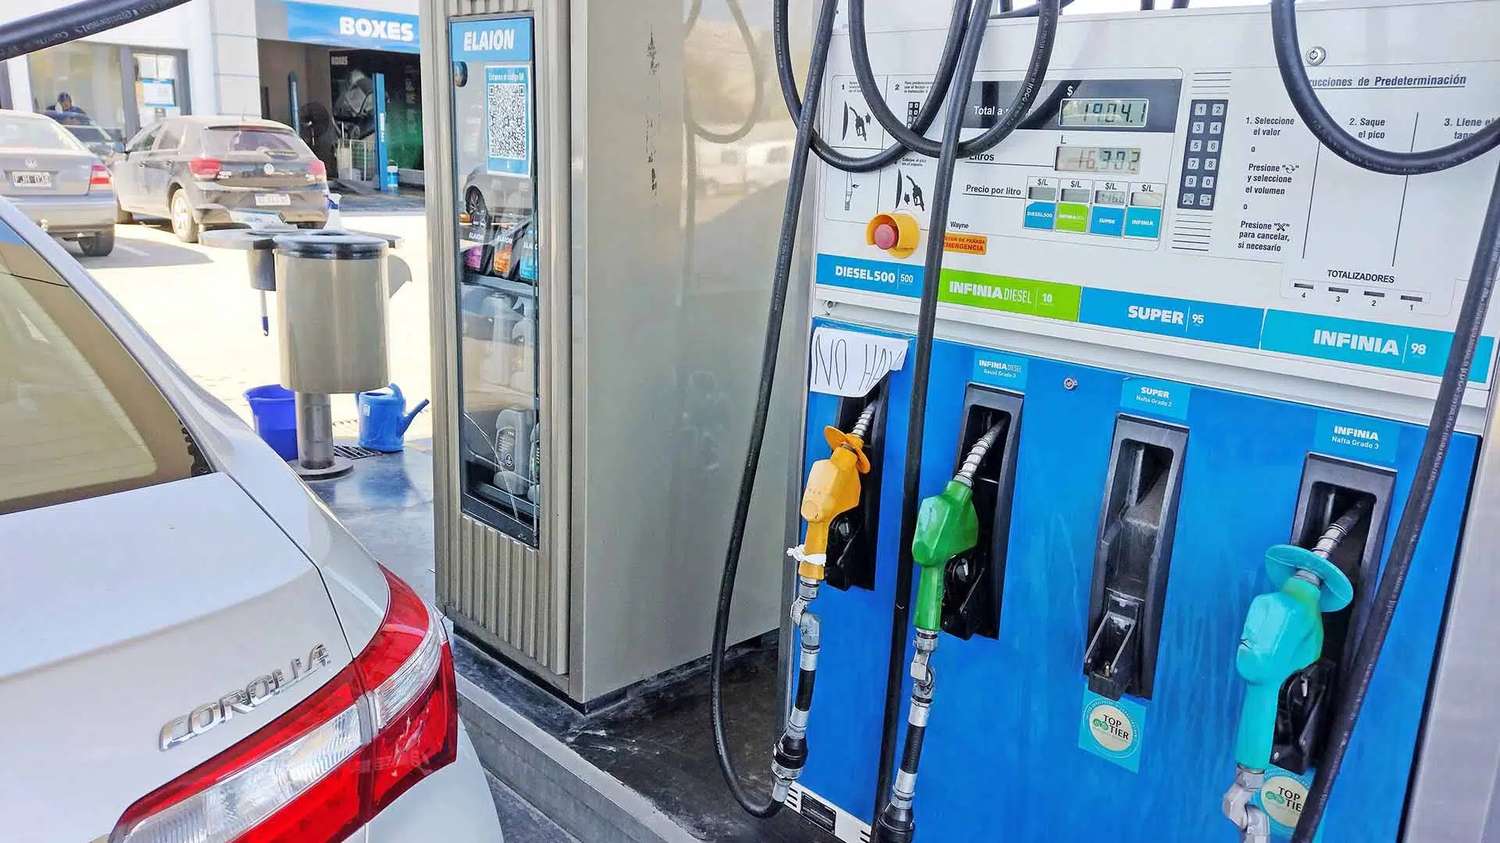 ¿Cuál es la razón detrás de la falta de combustible y gasoil en distintas estaciones de servicio?